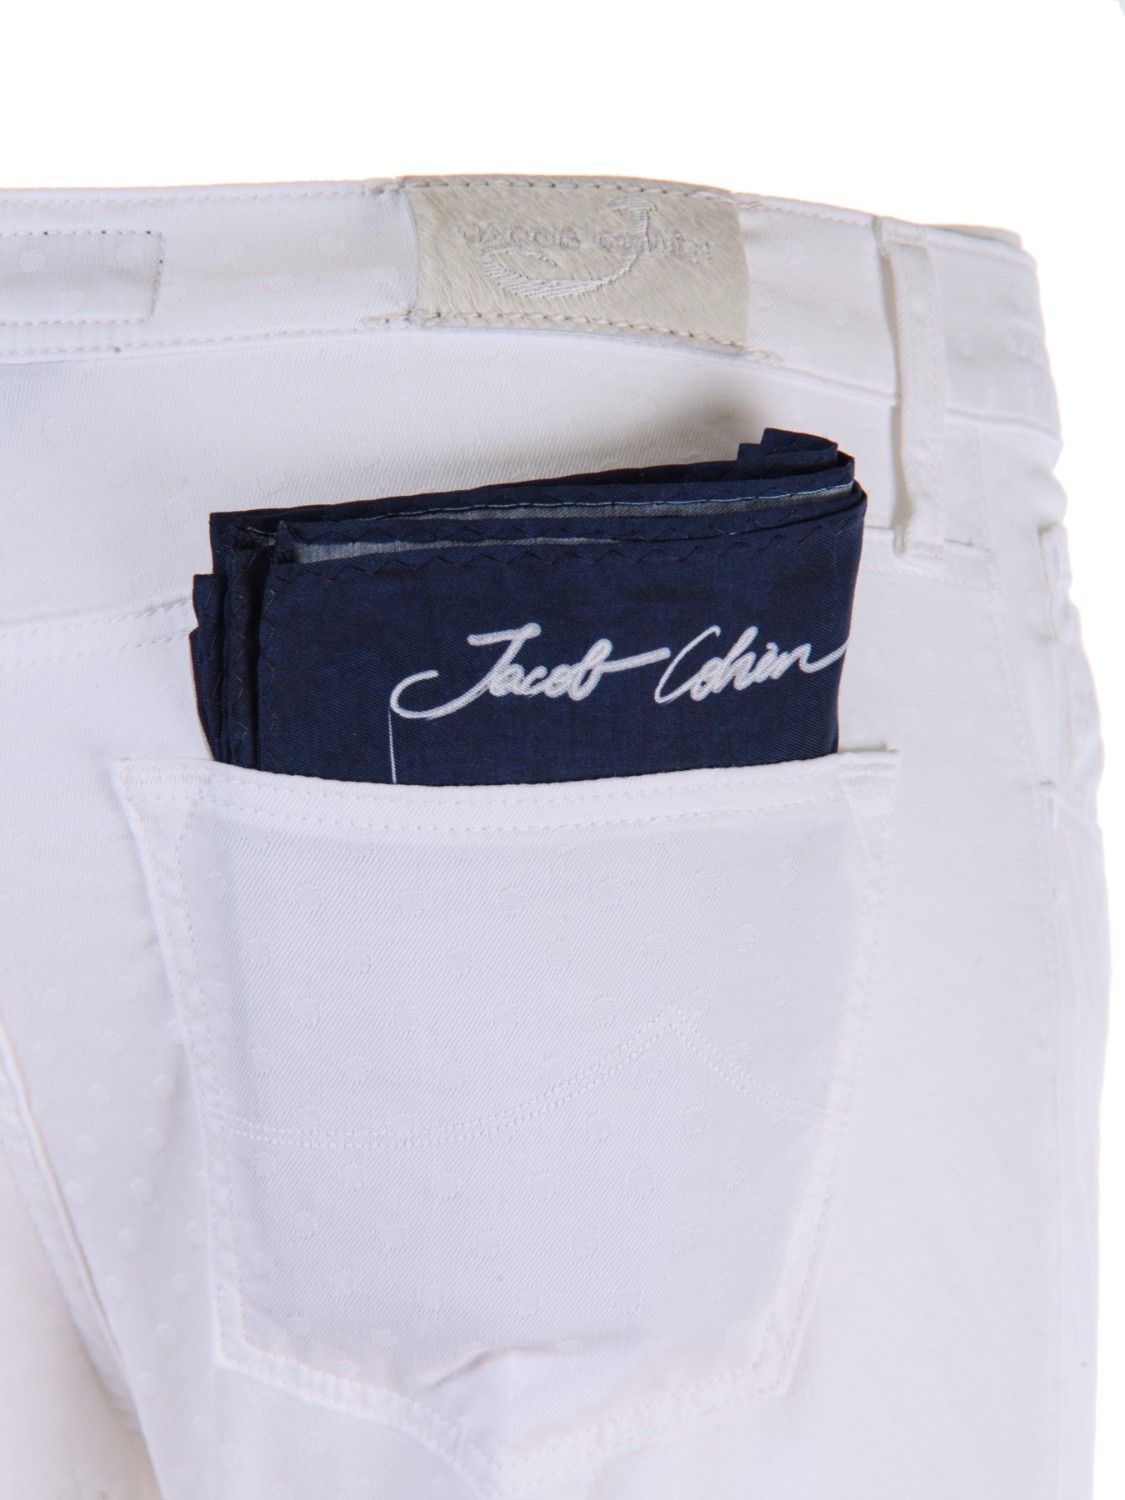 shop JACOB COHEN Saldi Pantalone: Jacob Cohen pantalone bianco elasticizzato con pois tono su tono.
Chiusura con zip e bottone.
Composizione: 96% cotone 4% elastan.
Made in Italy.. KIMBERLY CROP 00984S-100 number 4458595